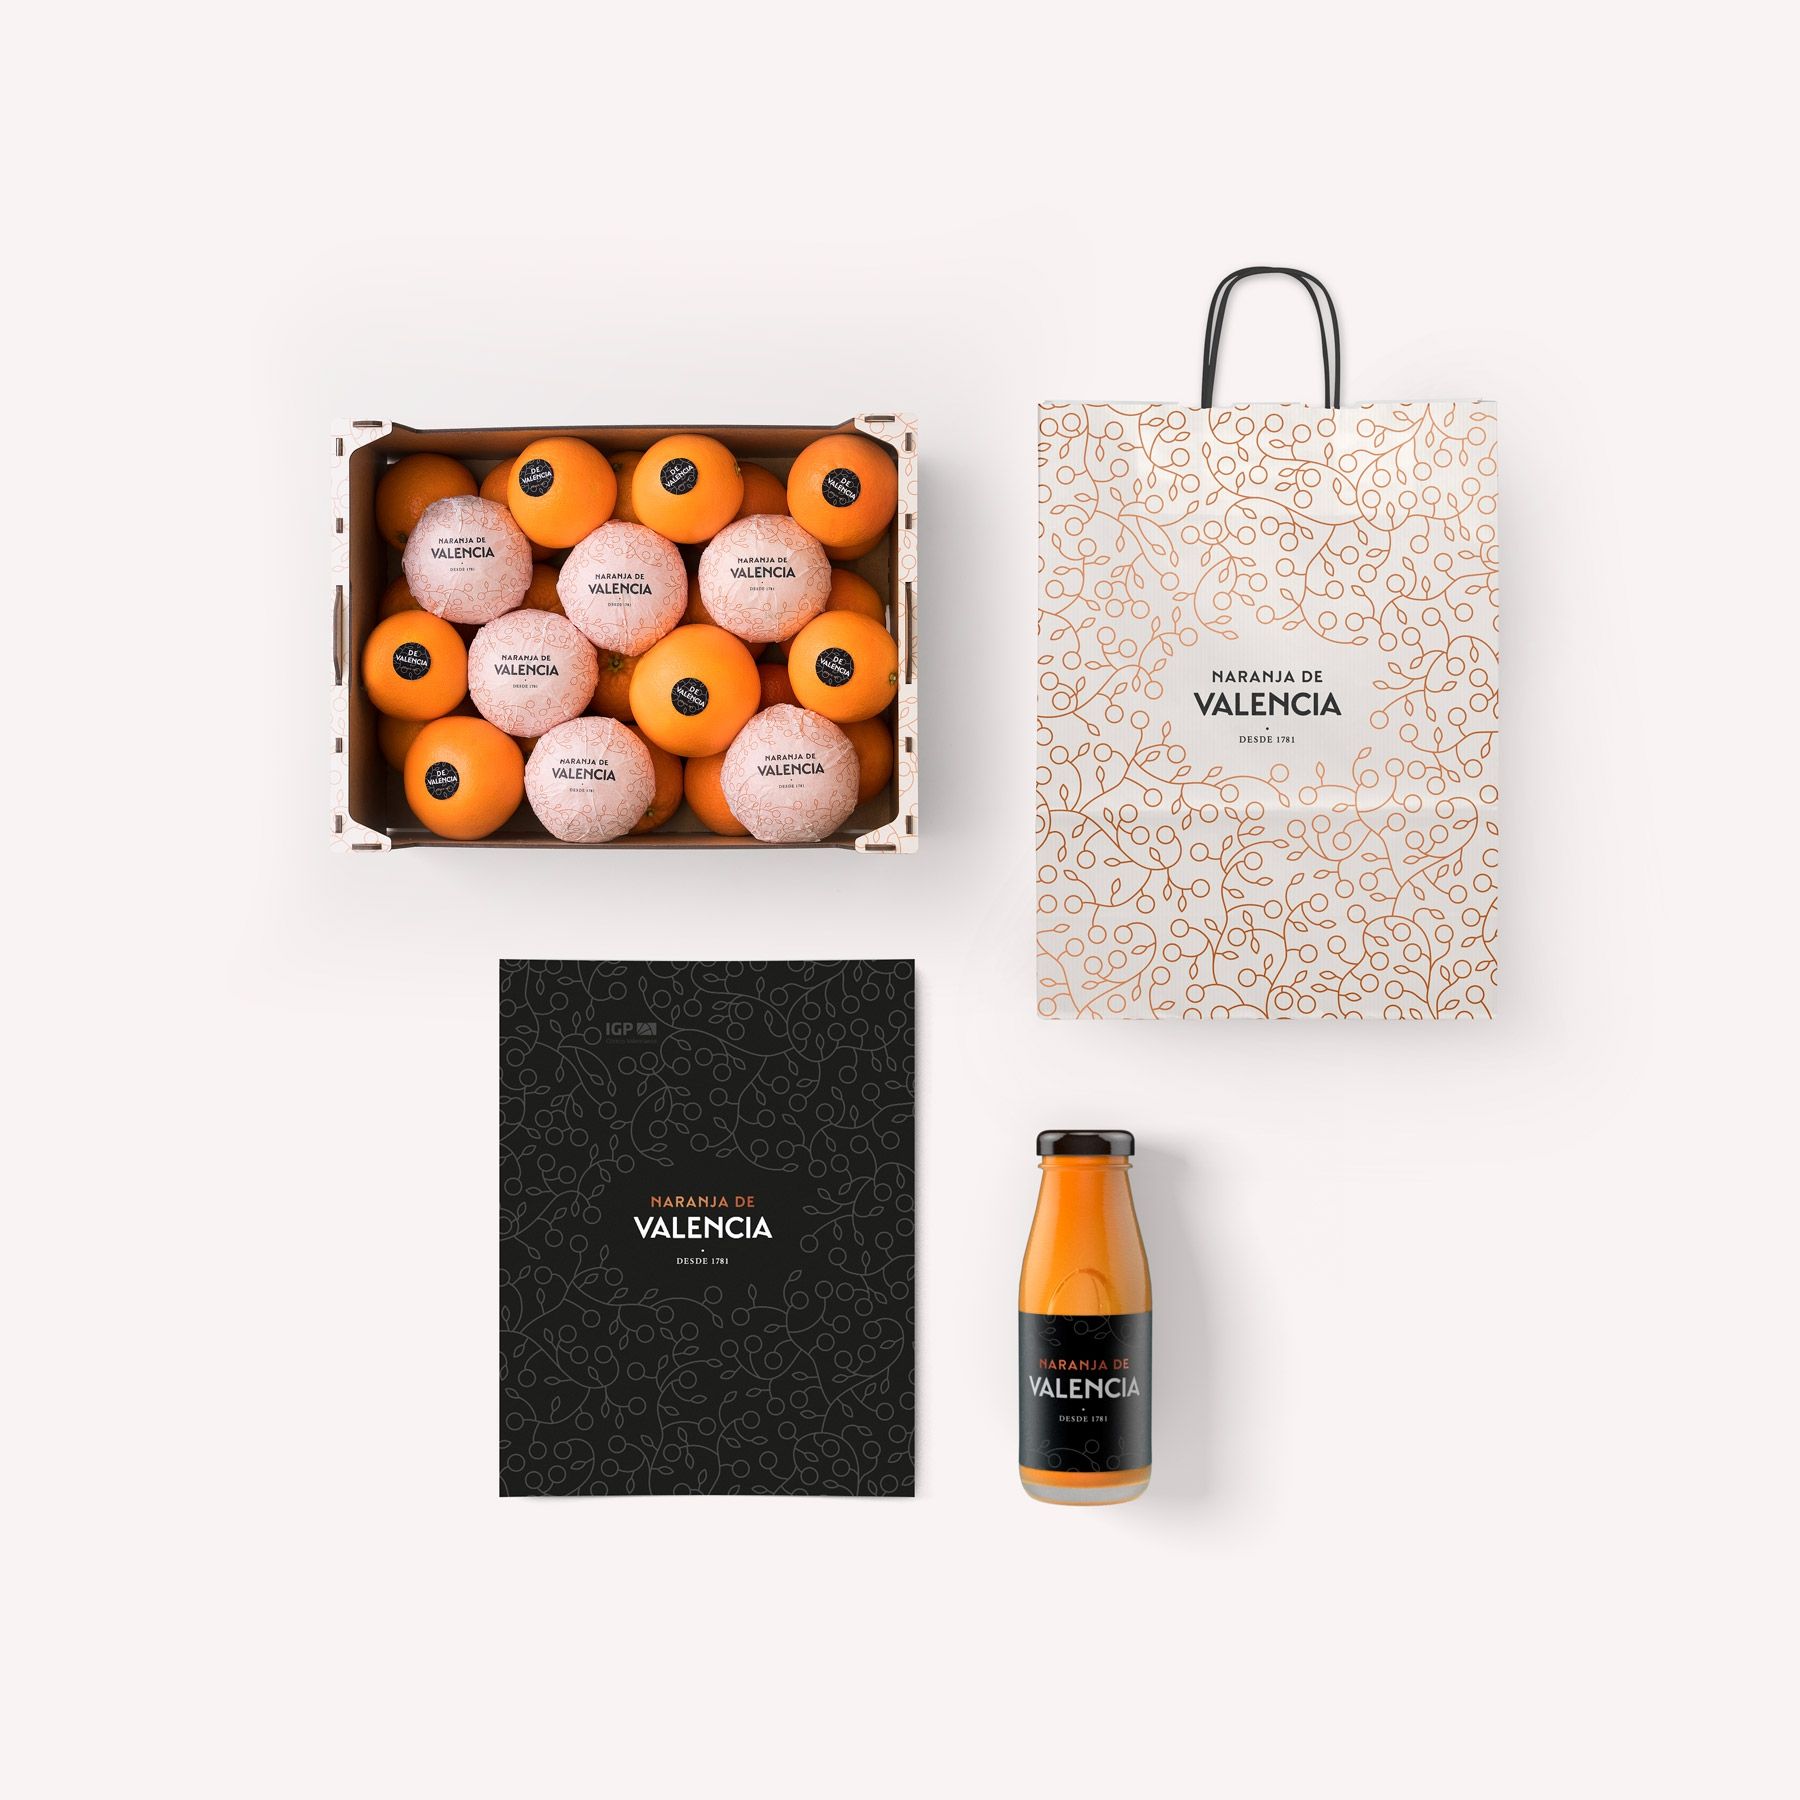 有机出口橙子包装设计 飞特网 食品包装设计作品欣赏